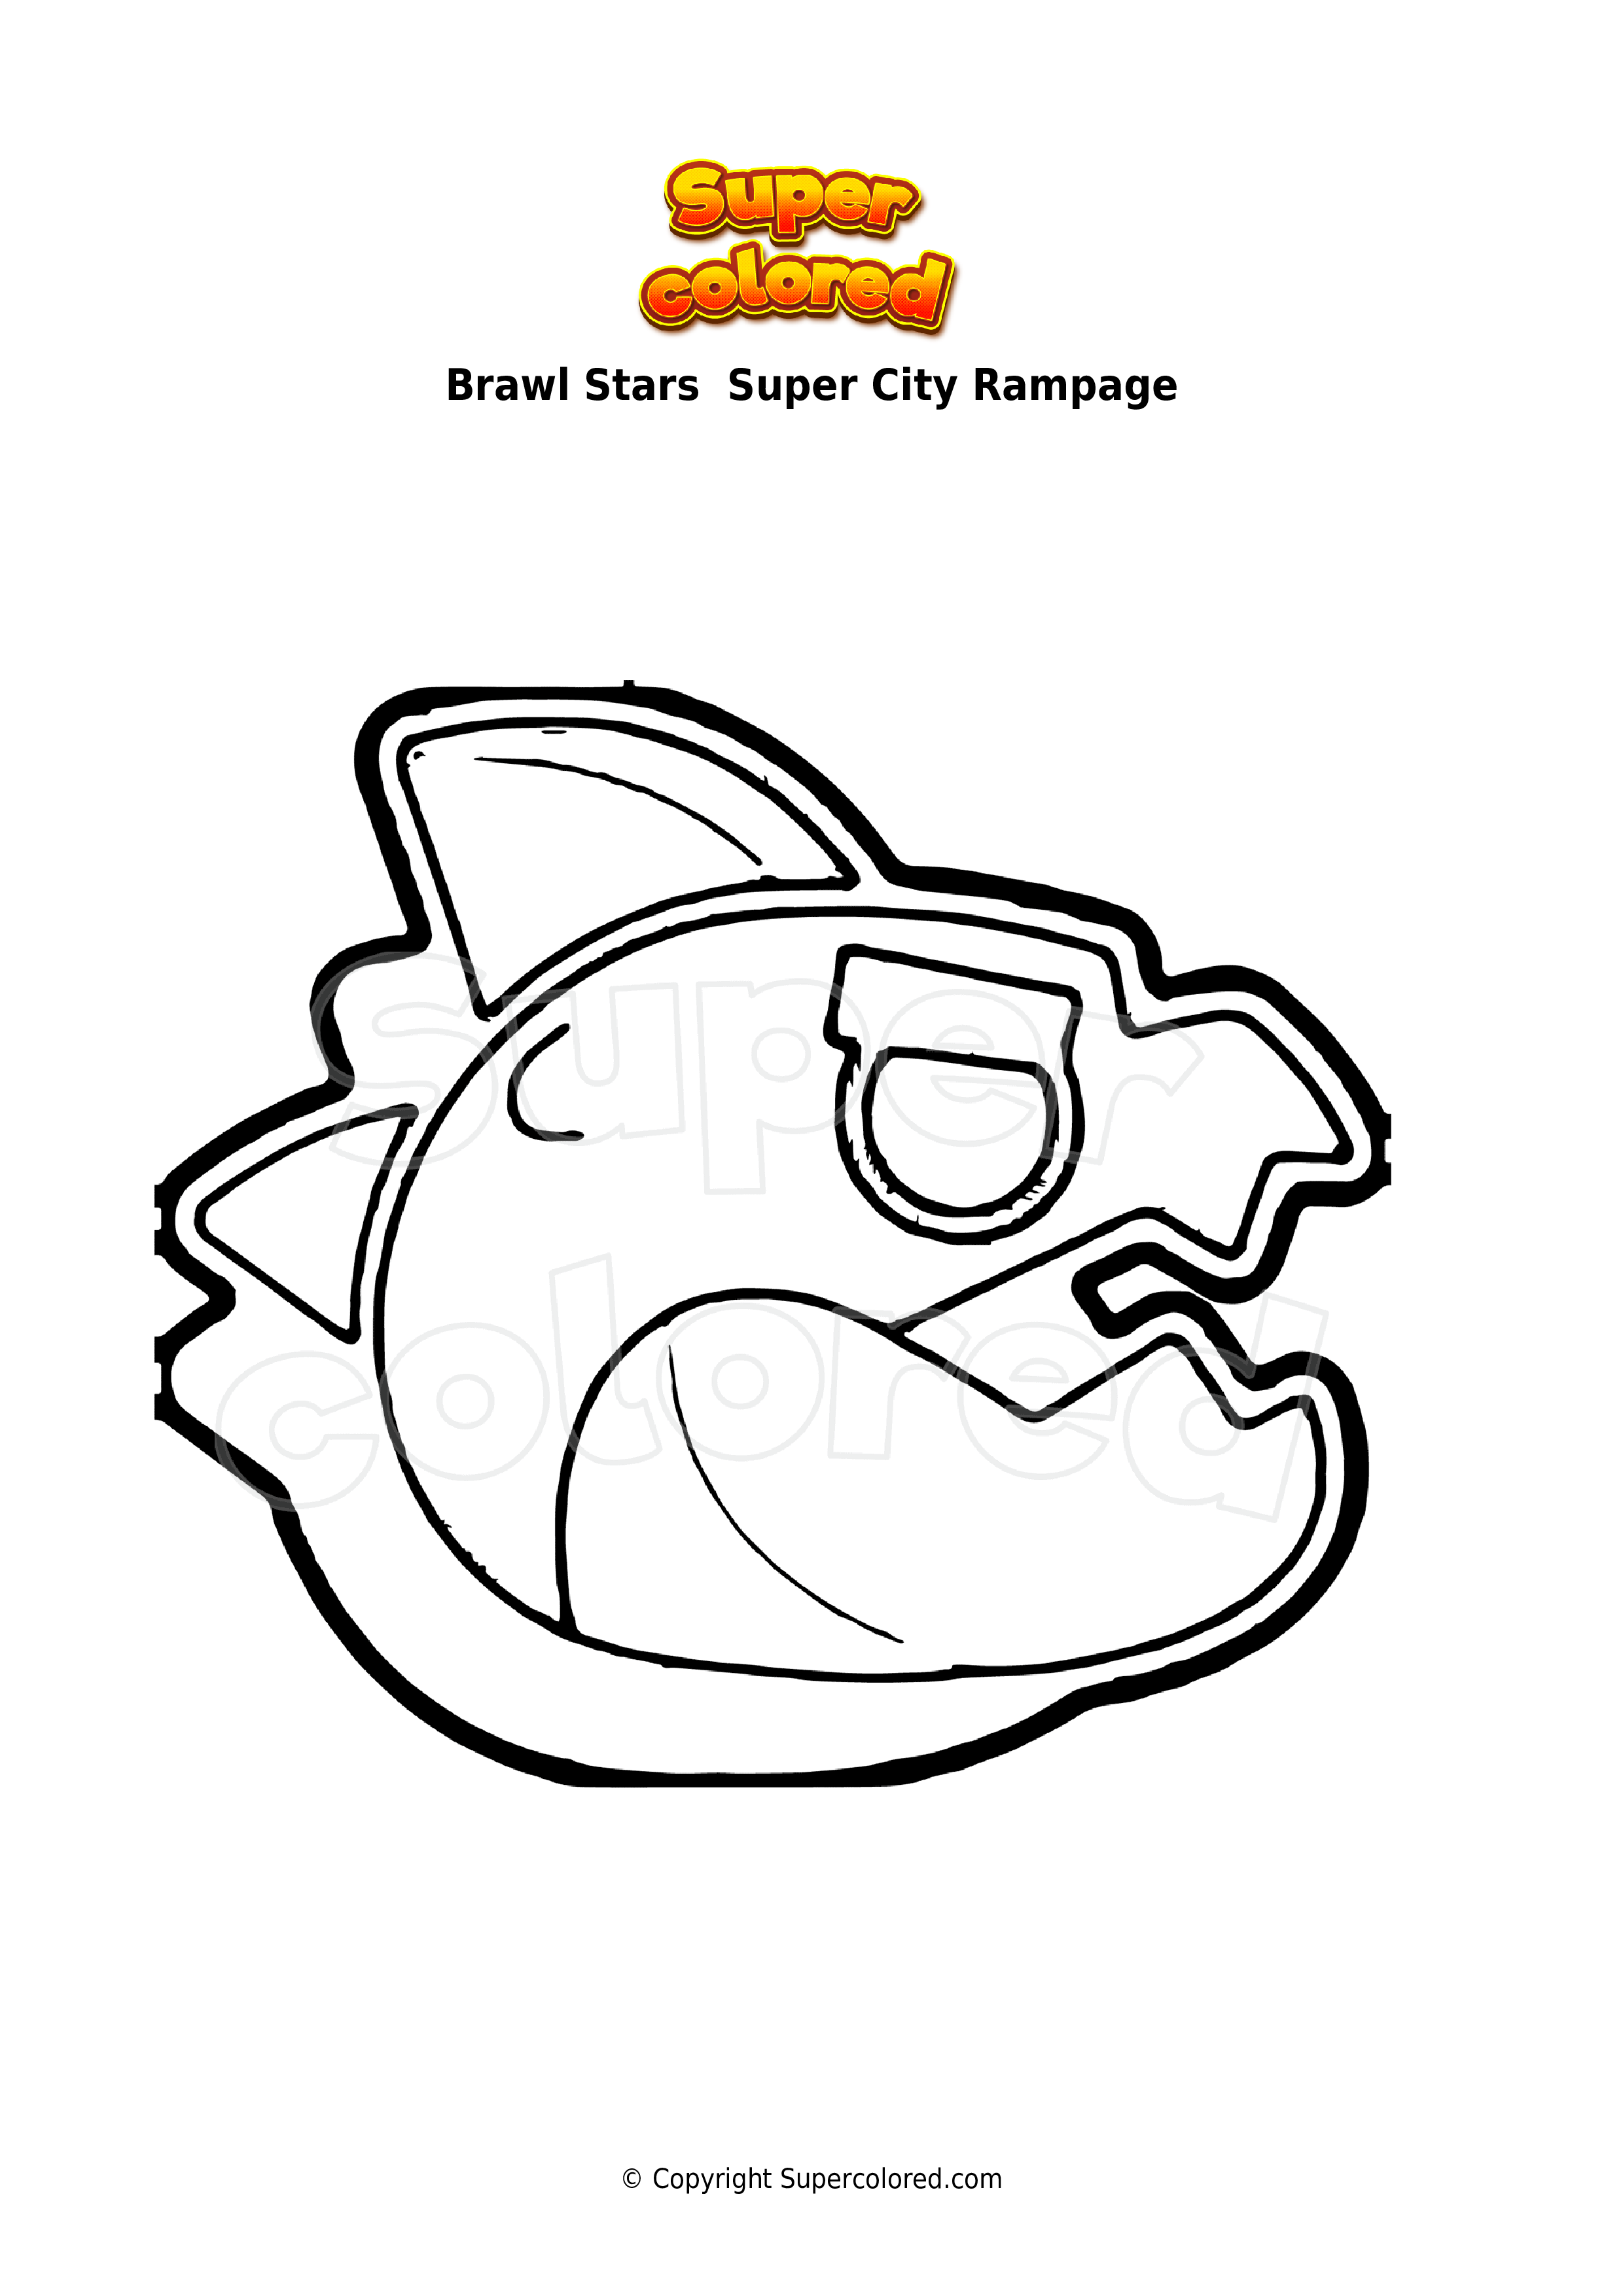 Coloring Page Brawl Stars Super City Rampage Supercolored